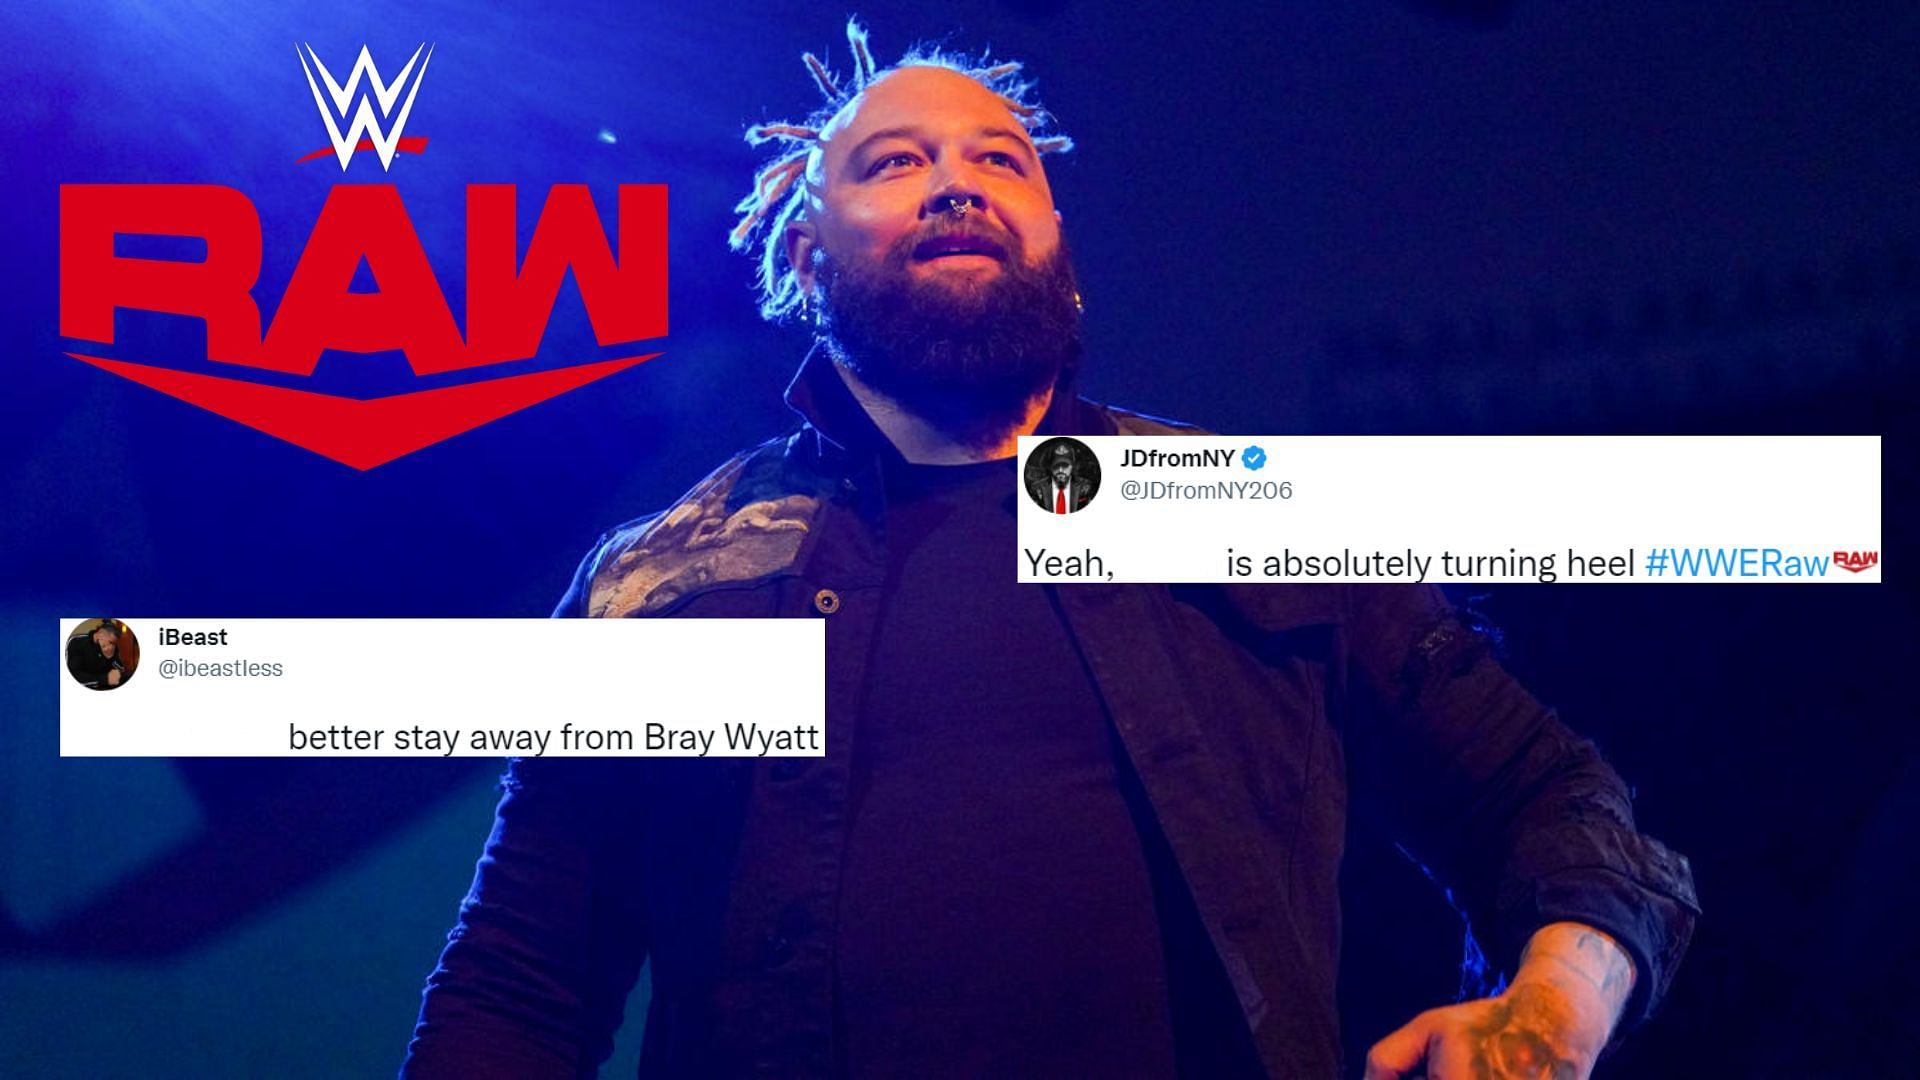 Bray Wyatt made his presence felt on WWE RAW.